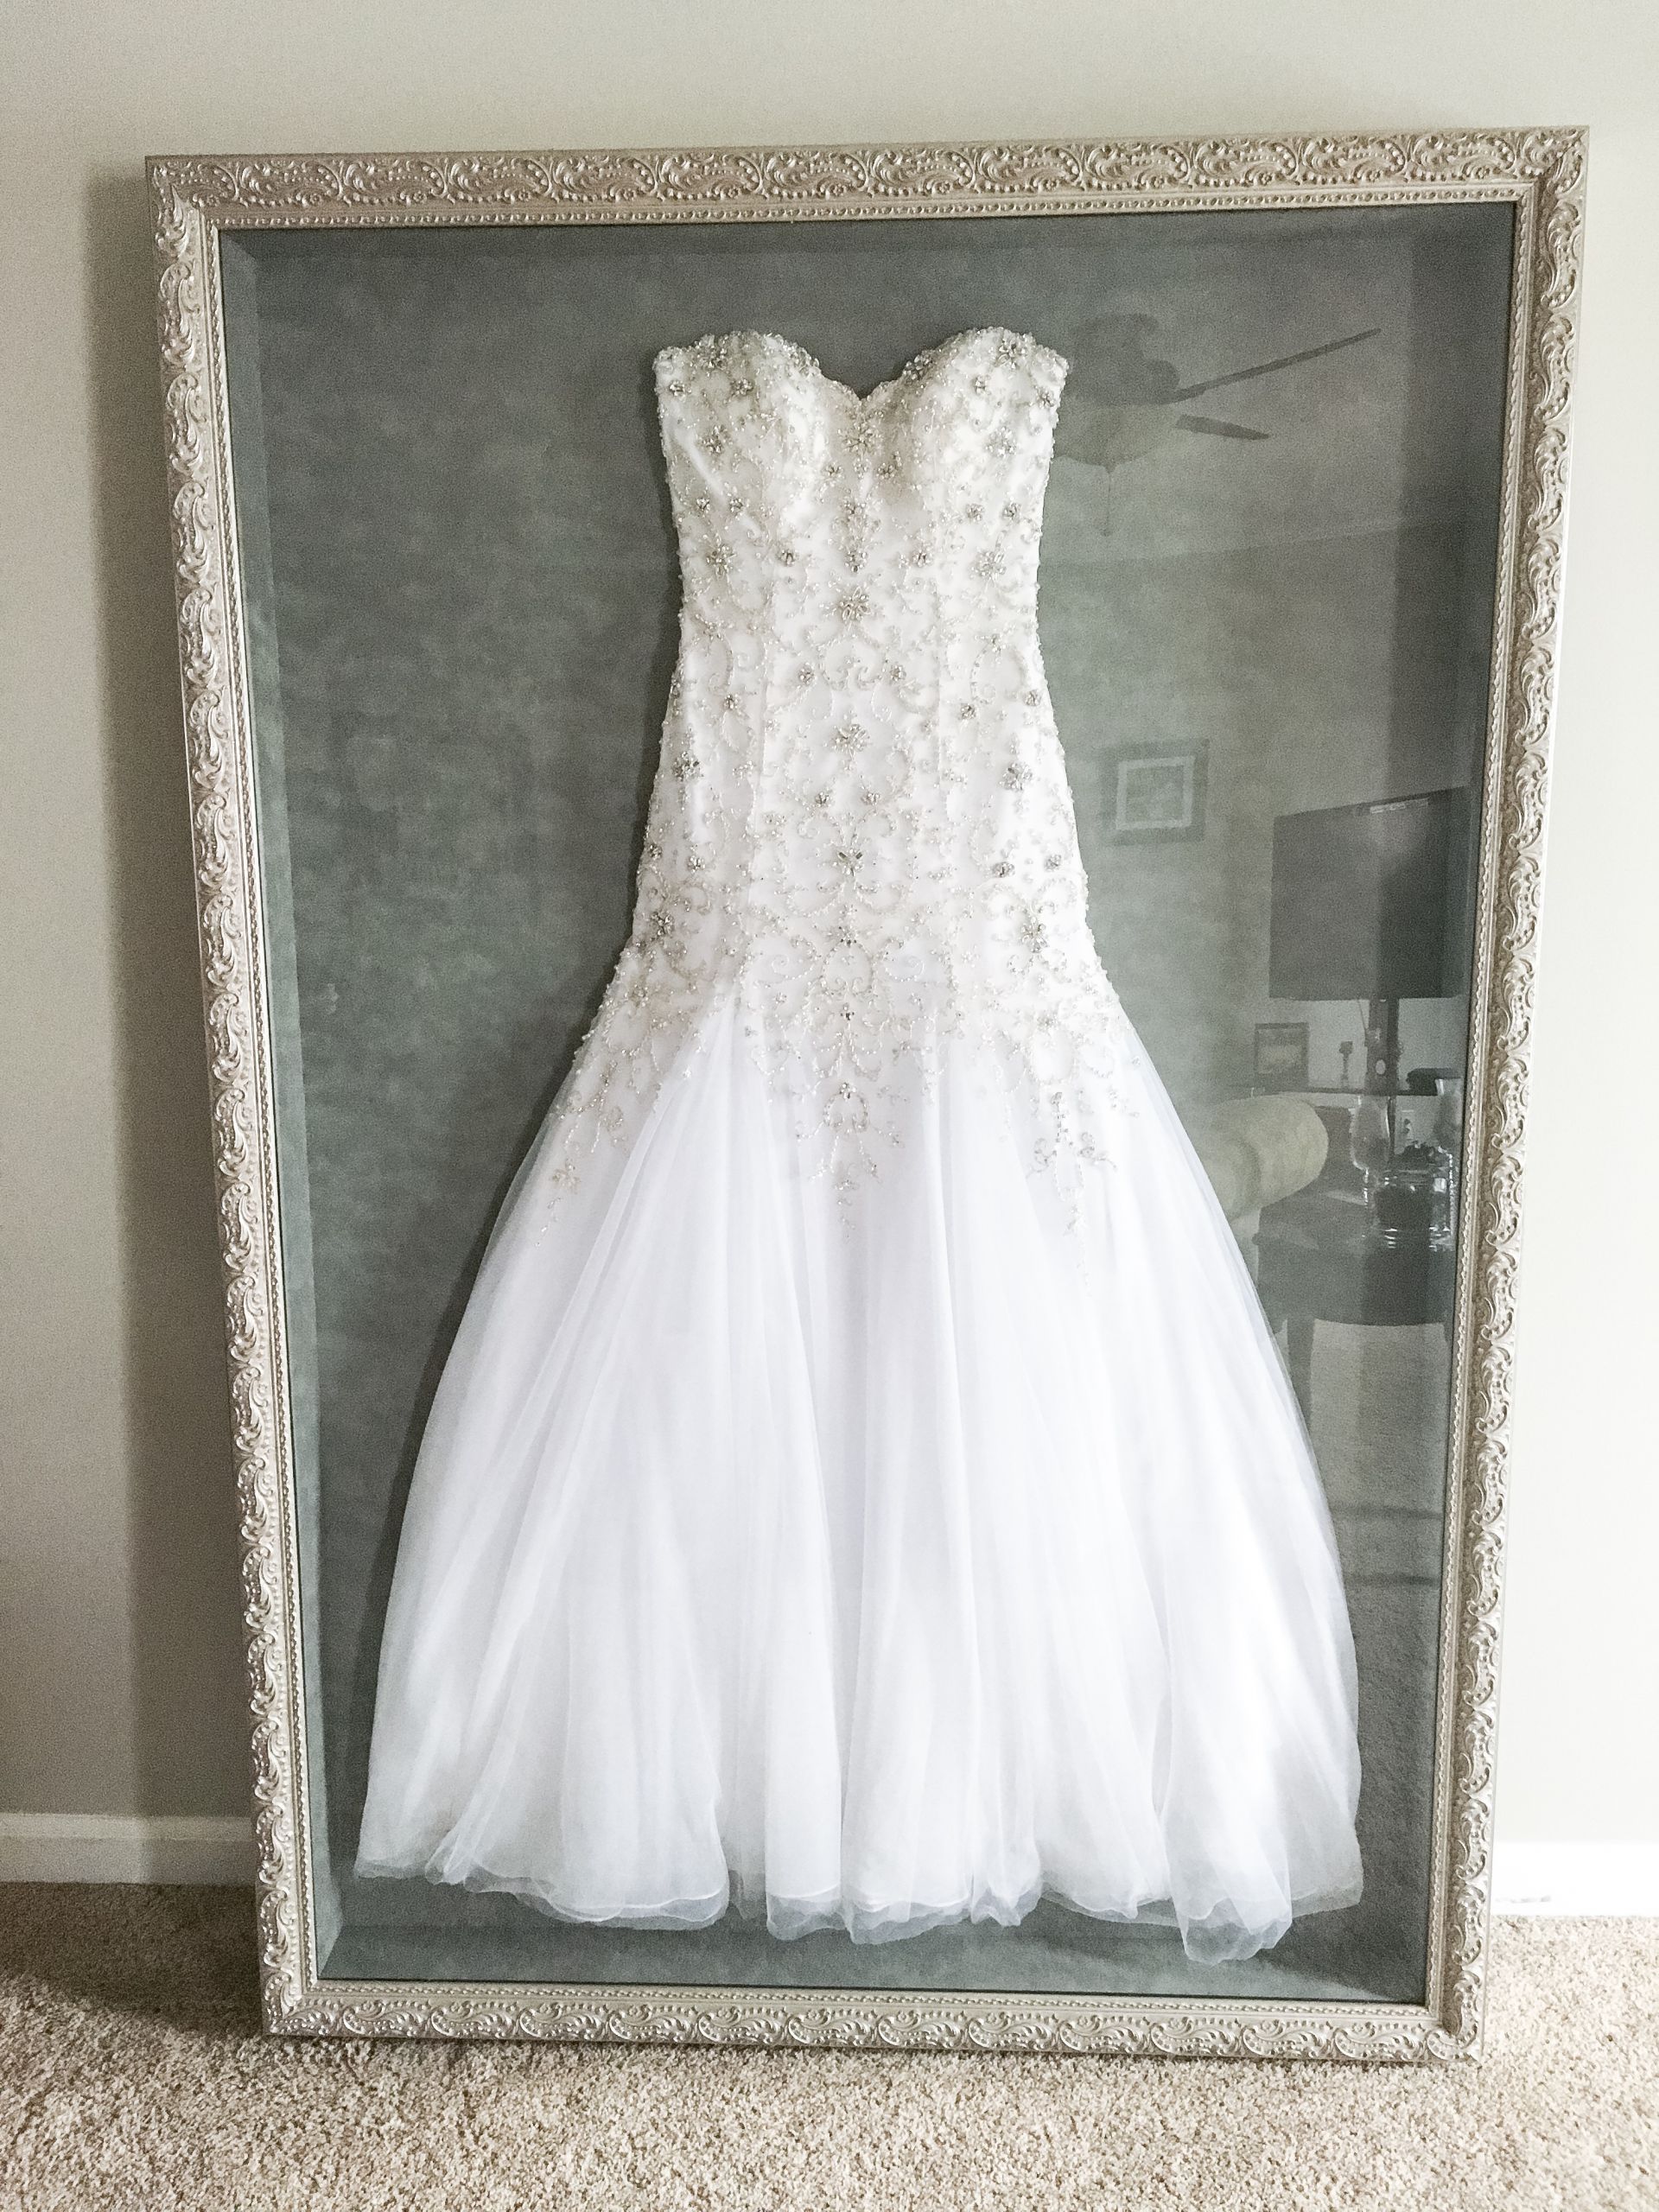 DIY Wedding Dress Preservation
 Wedding Dress Frame Ideas To Preserve Your Precious